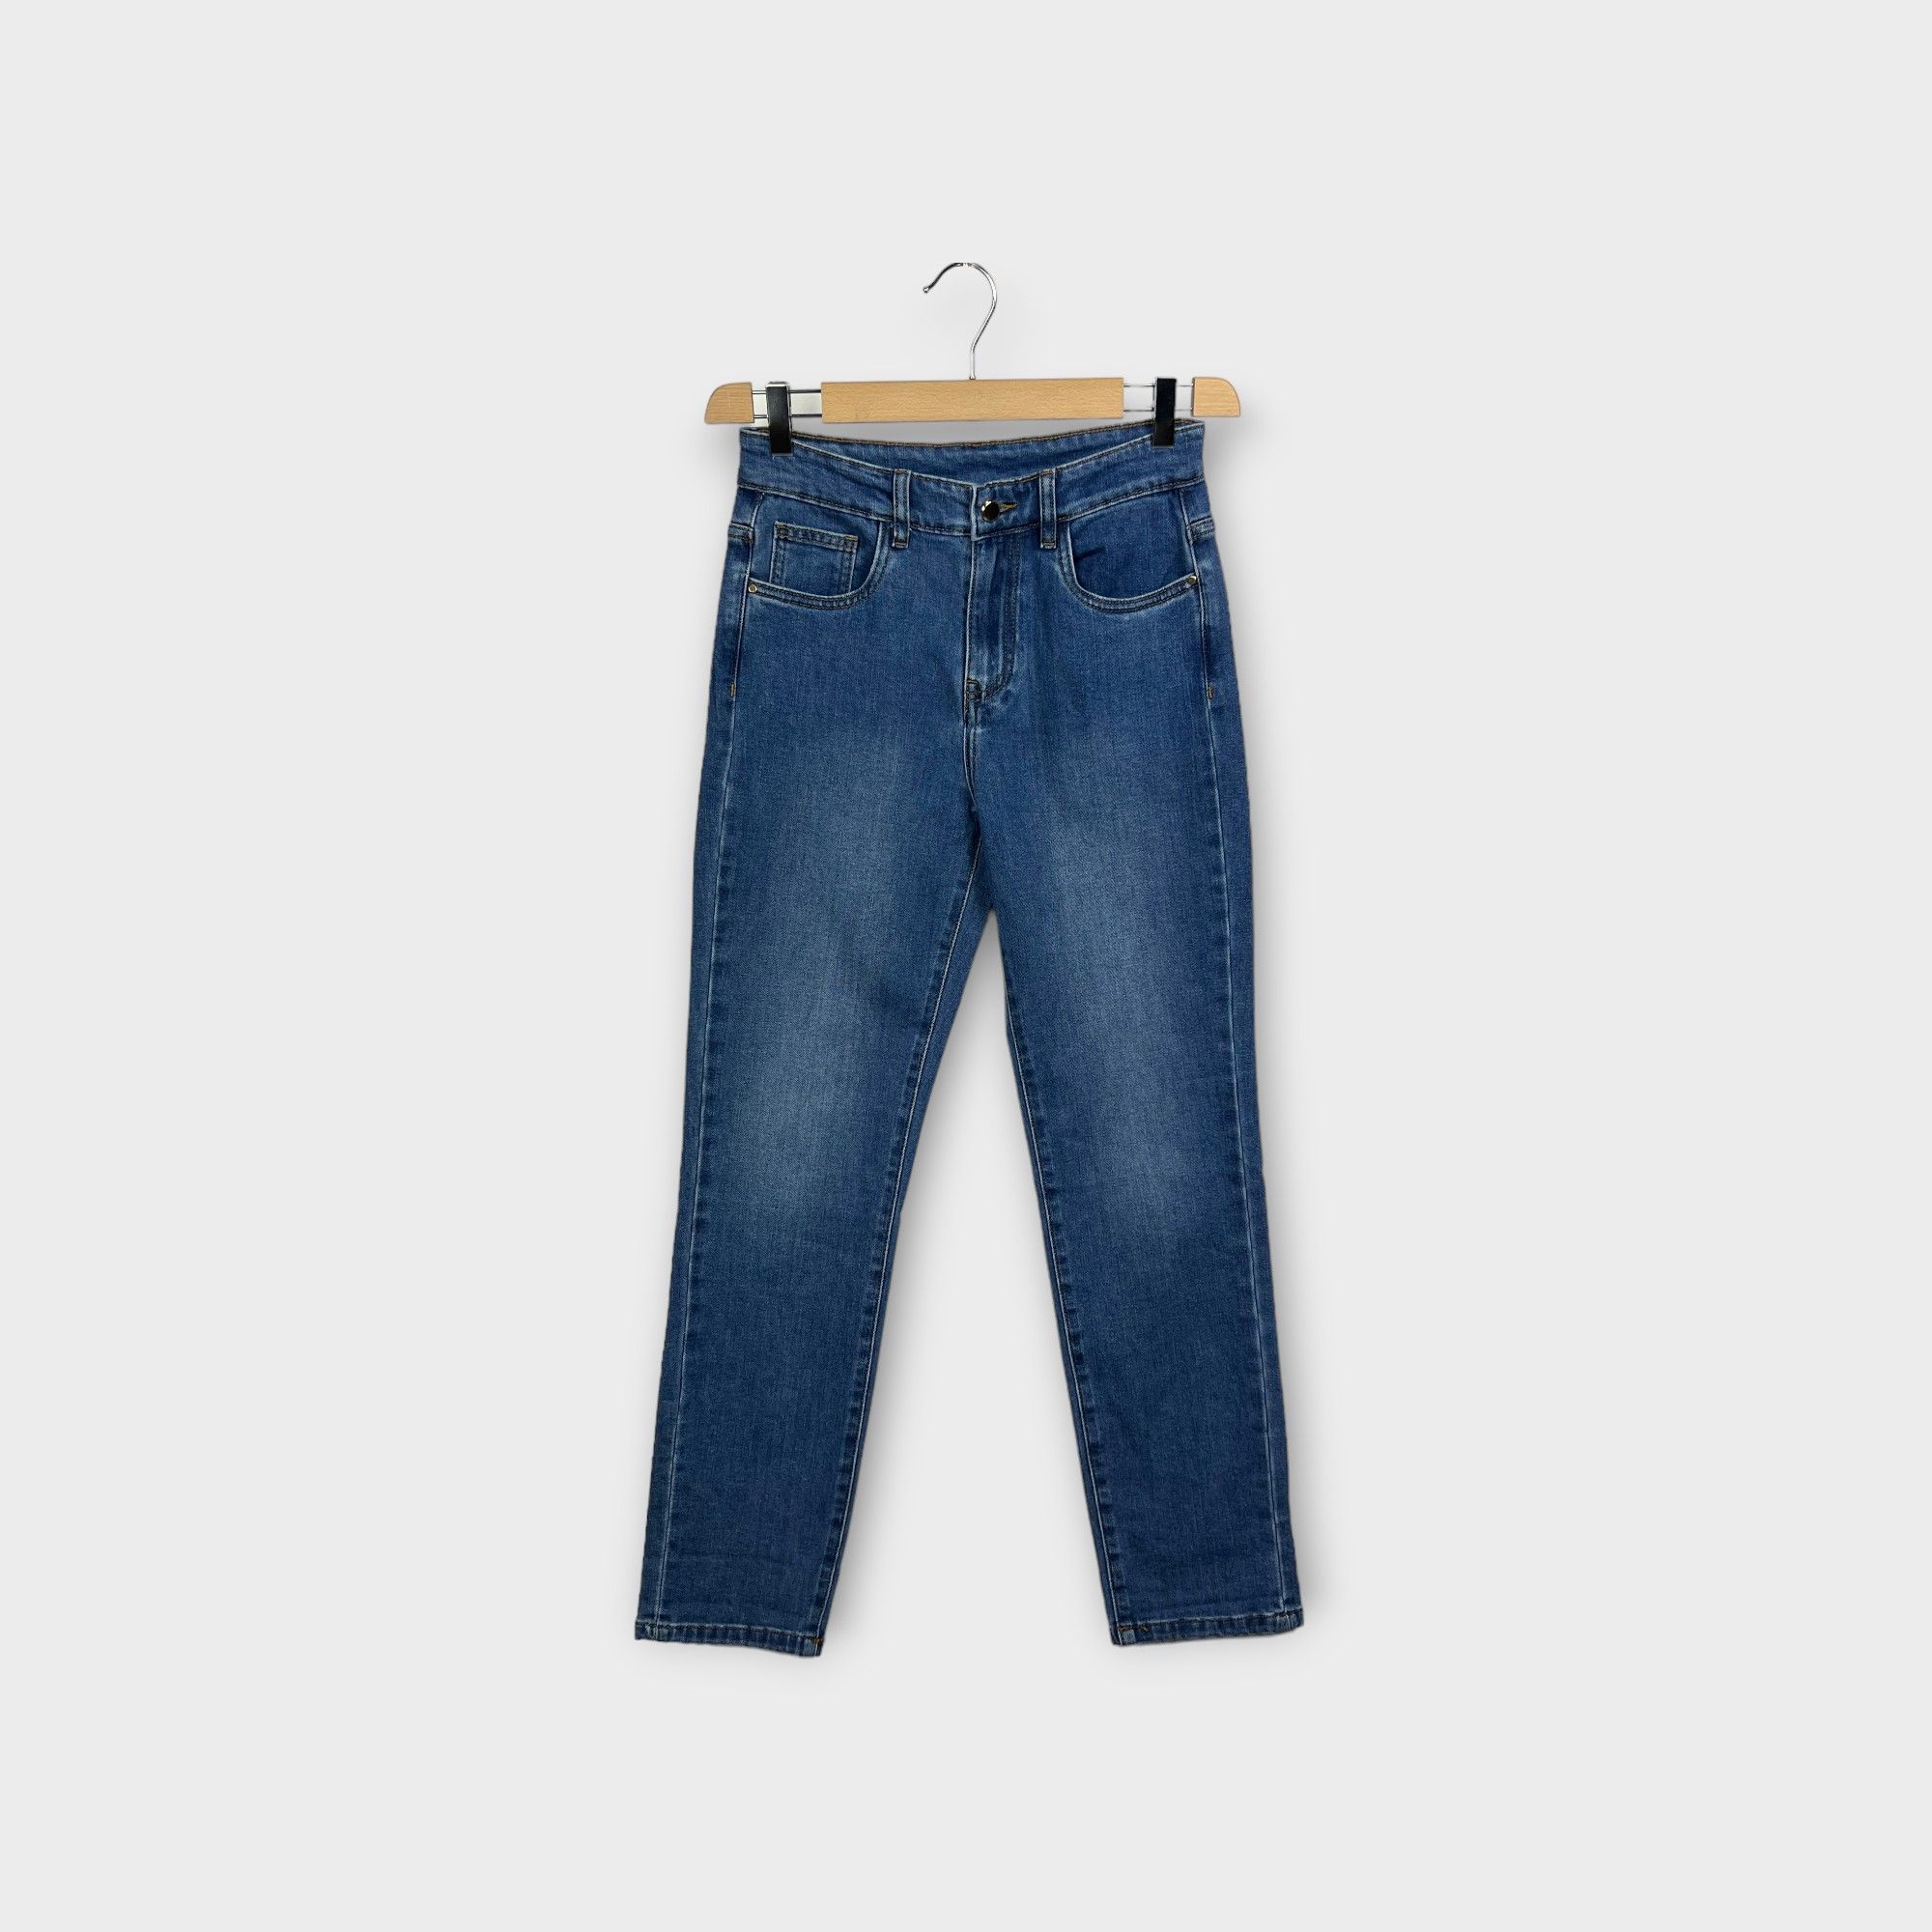 images/virtuemart/product/HELLEH Jeans cinque tasche donna modello carota in tela di cotone stretch colore denim 1.jpg